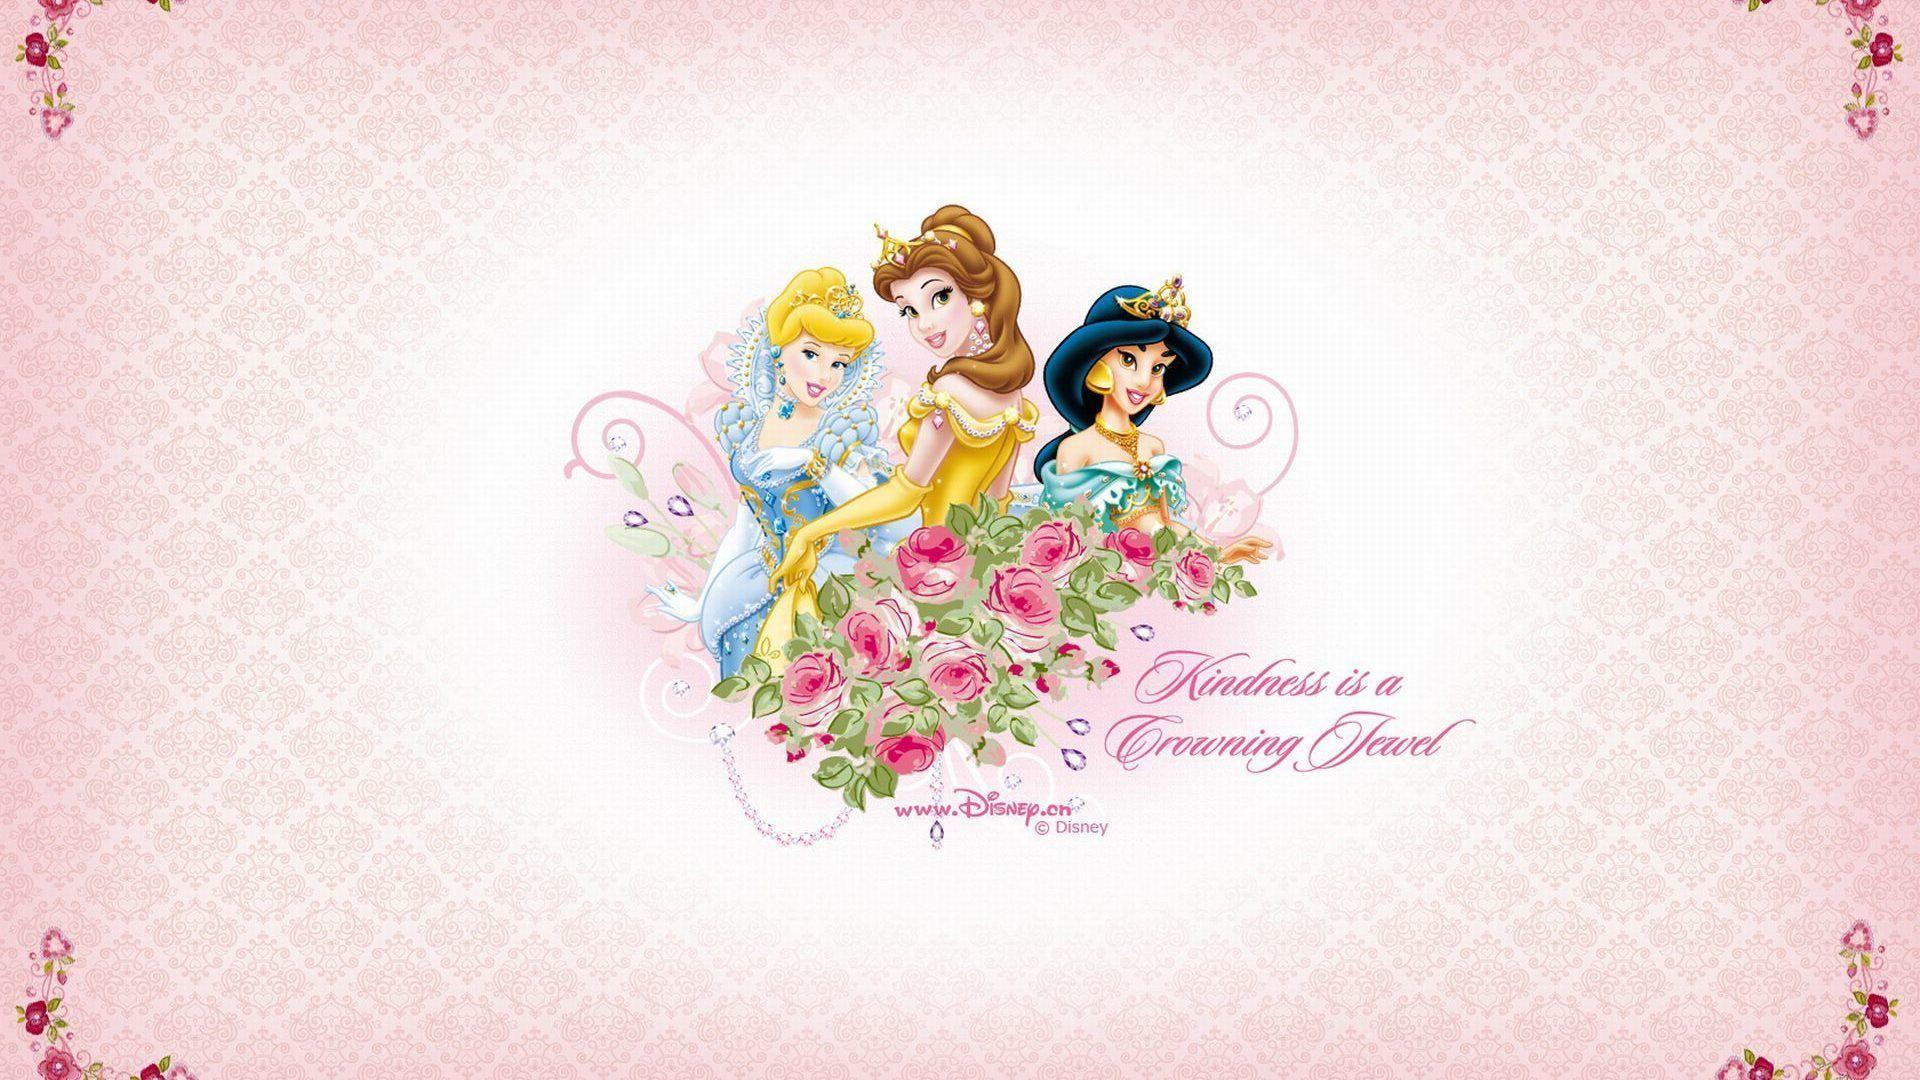 Disney Princes Fairy Tail Photo Wallpaper